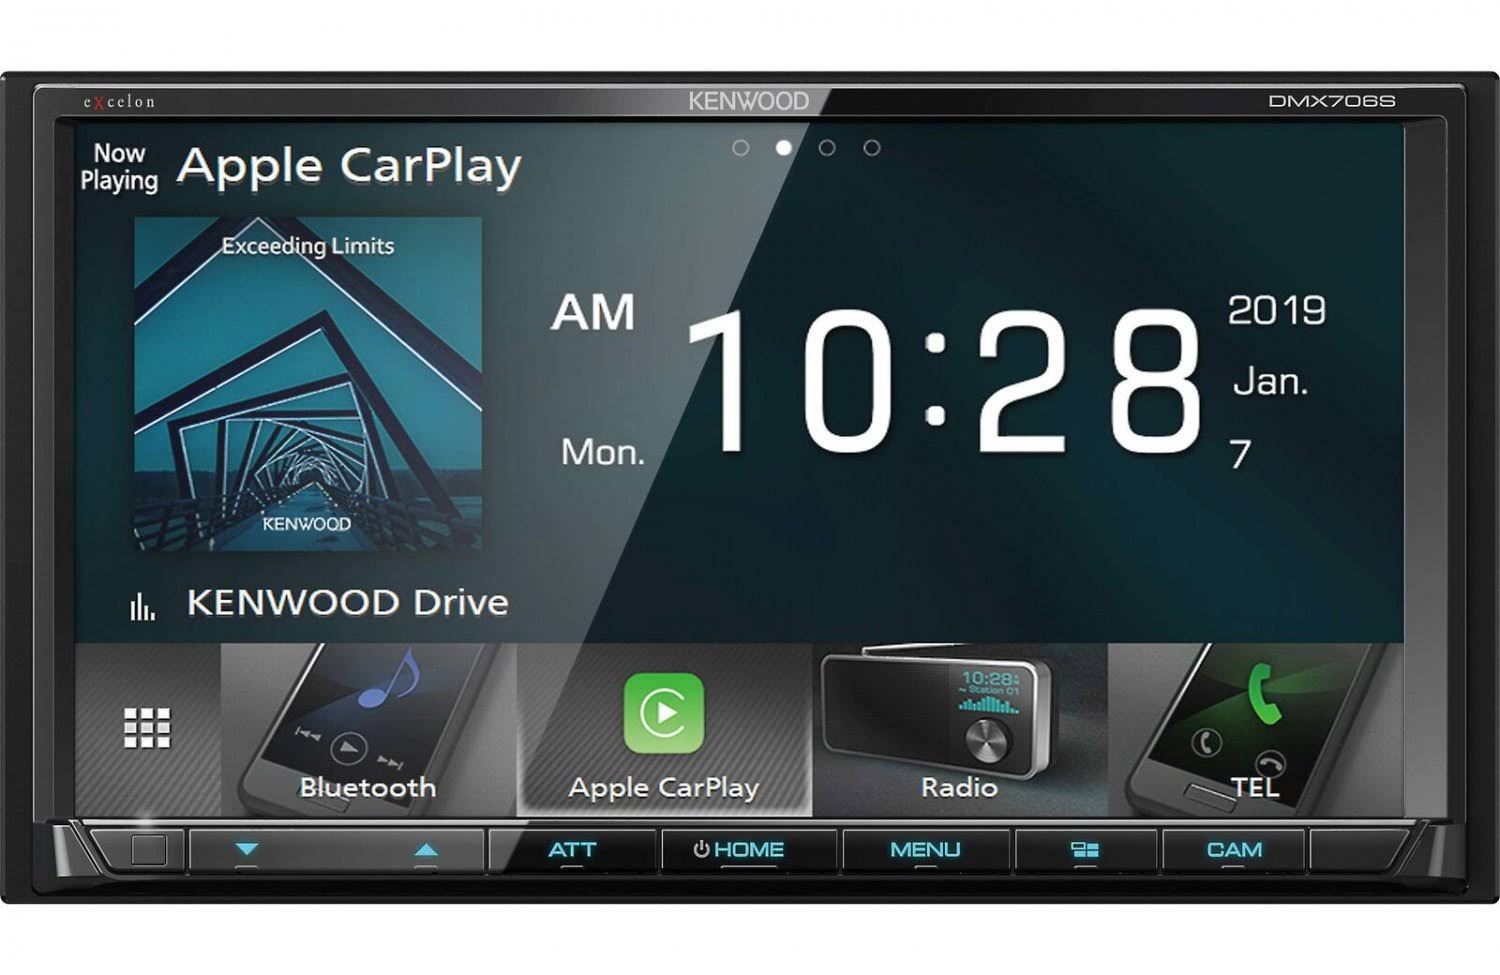 Kenwood Dmx706S Digital Media Receiver - With Wireless Apple Carplay